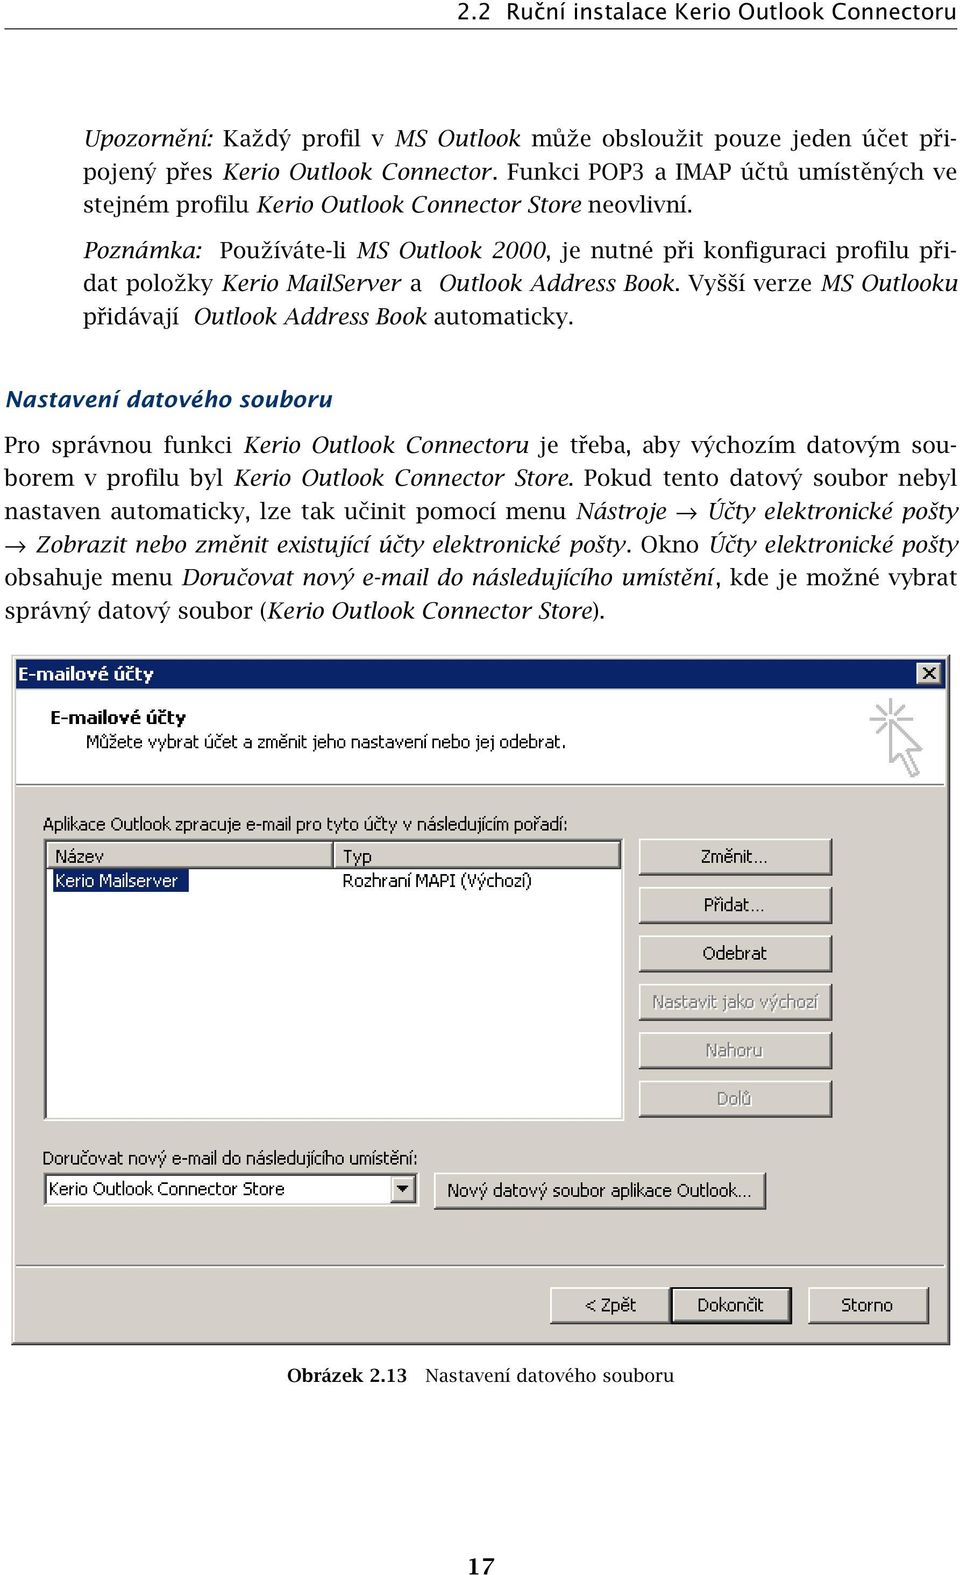 Poznámka: Používáte-li MS Outlook 2000, je nutné při konfiguraci profilu přidat položky Kerio MailServer a Outlook Address Book. Vyšší verze MS Outlooku přidávají Outlook Address Book automaticky.